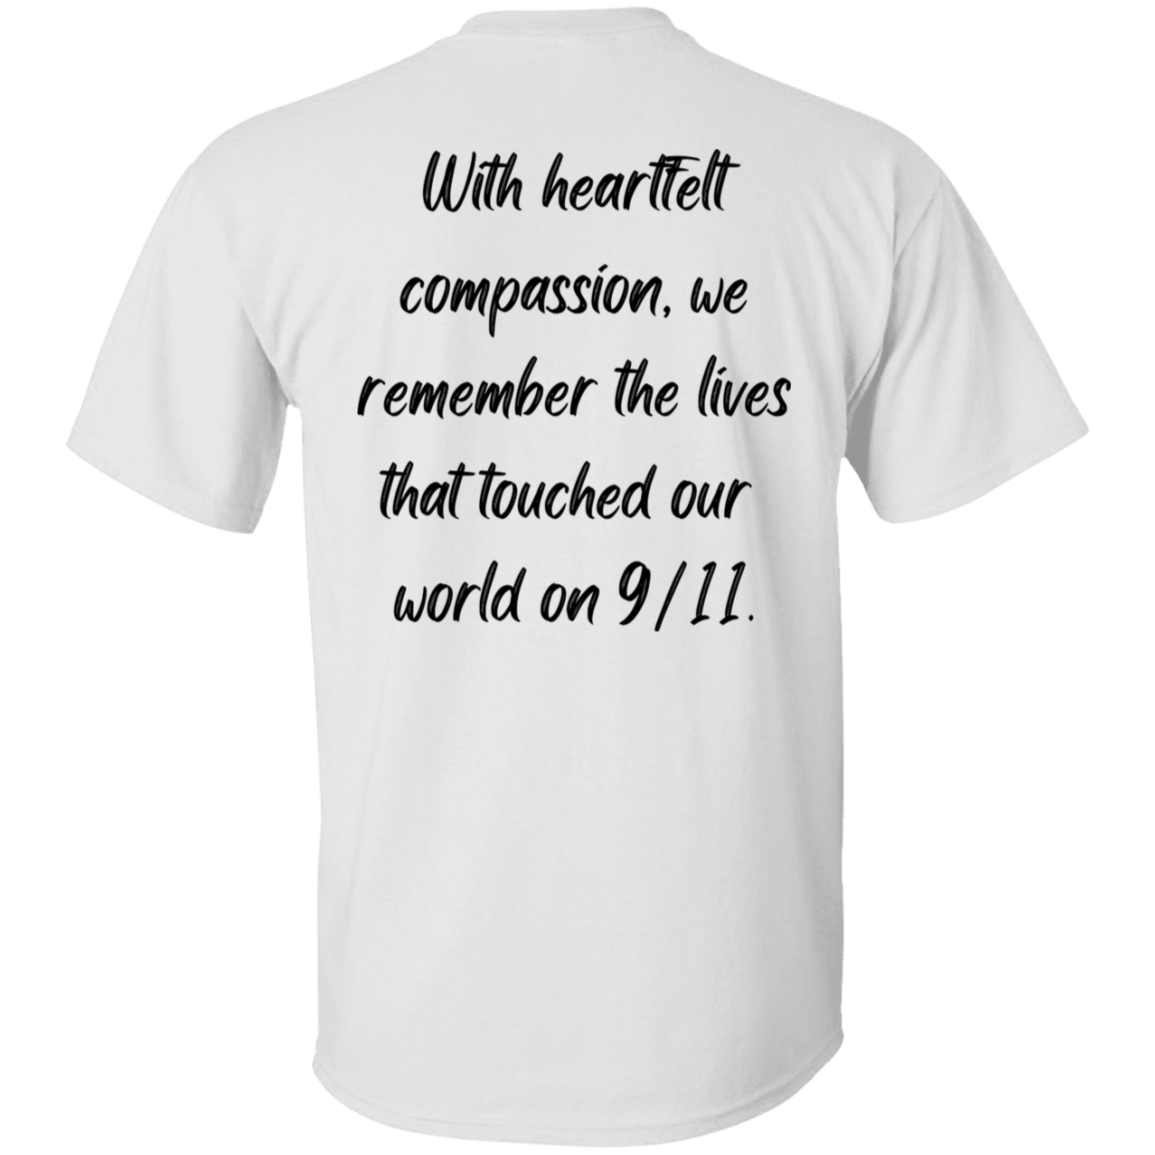 Recuerde siempre, honrando las vidas - Camiseta unisex para hombre y mujer